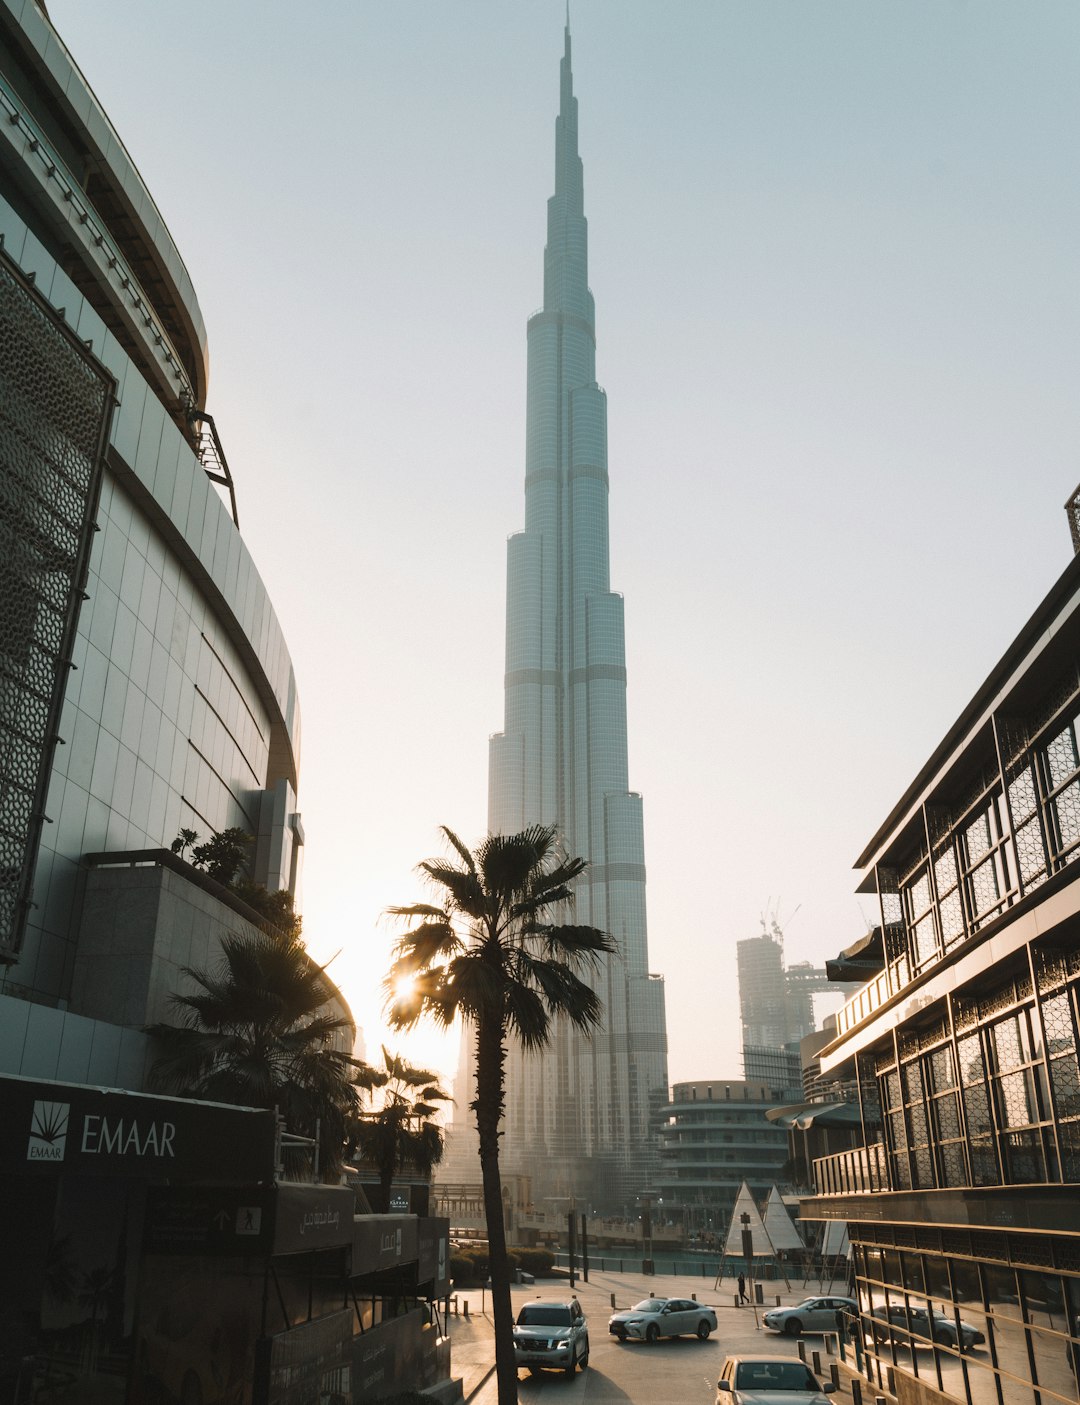 Landmark photo spot Burj Khalifa Lake - Dubai - United Arab Emirates Safa Park